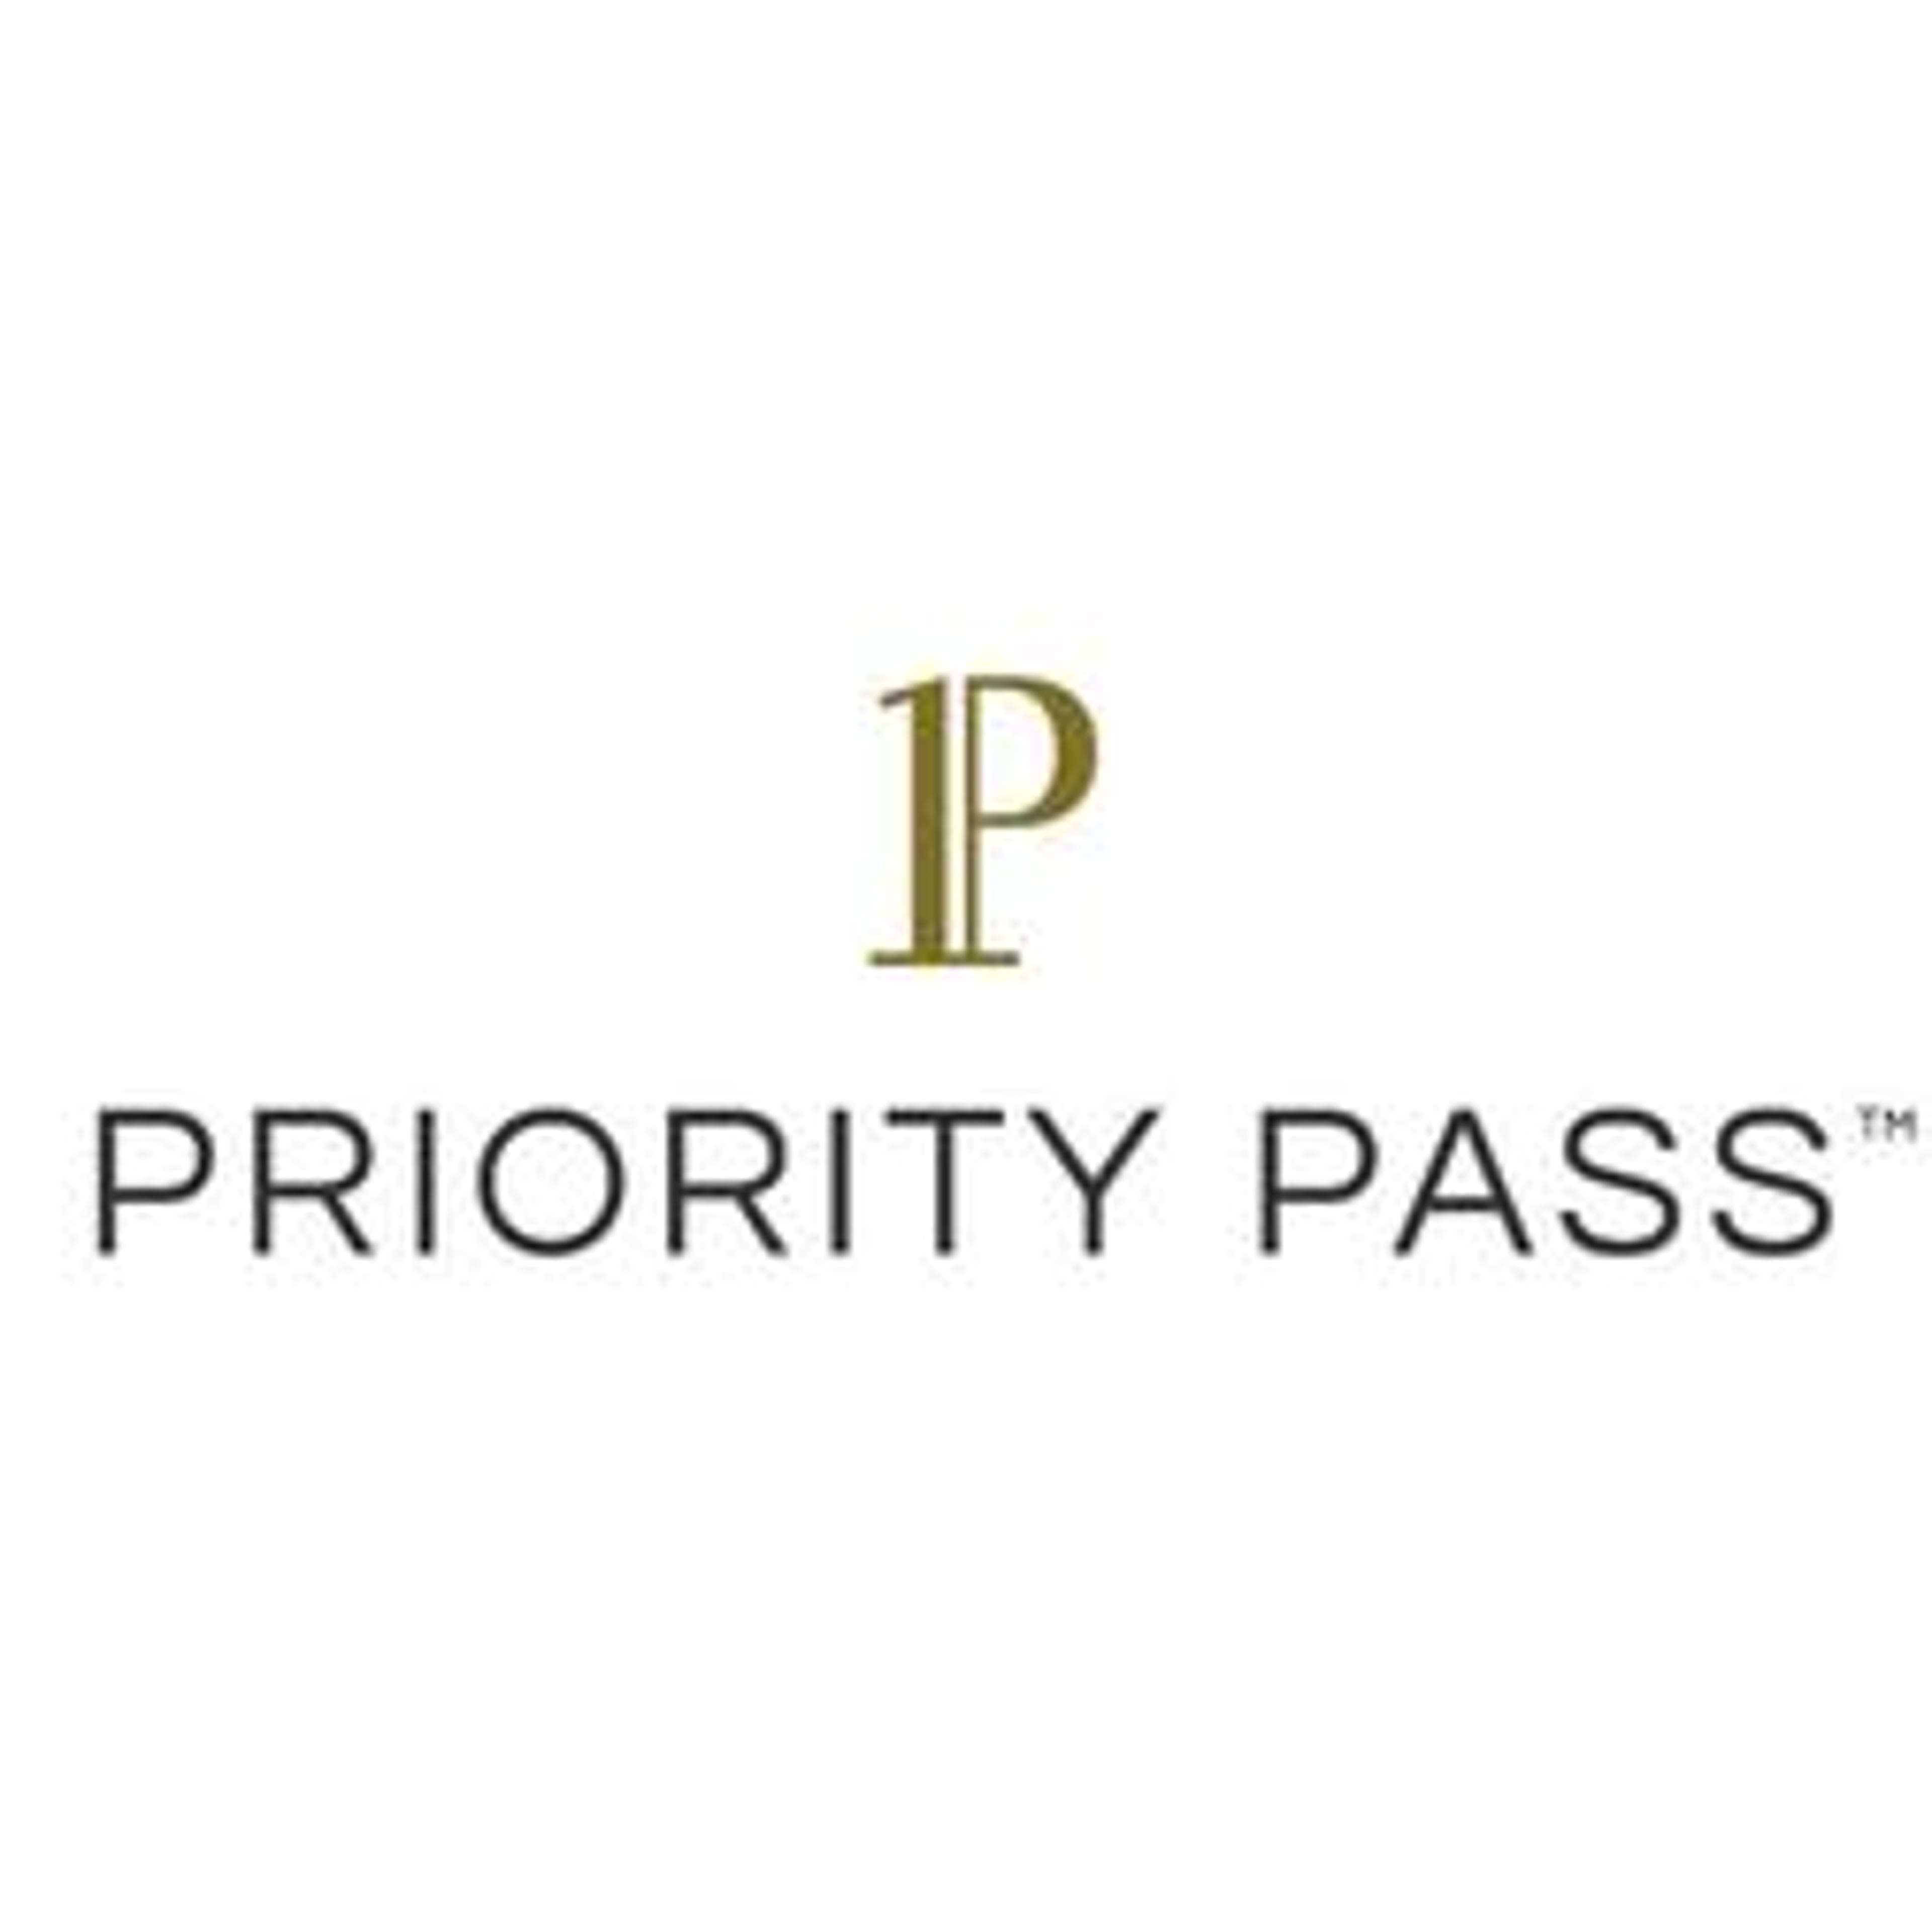  Priority Pass 